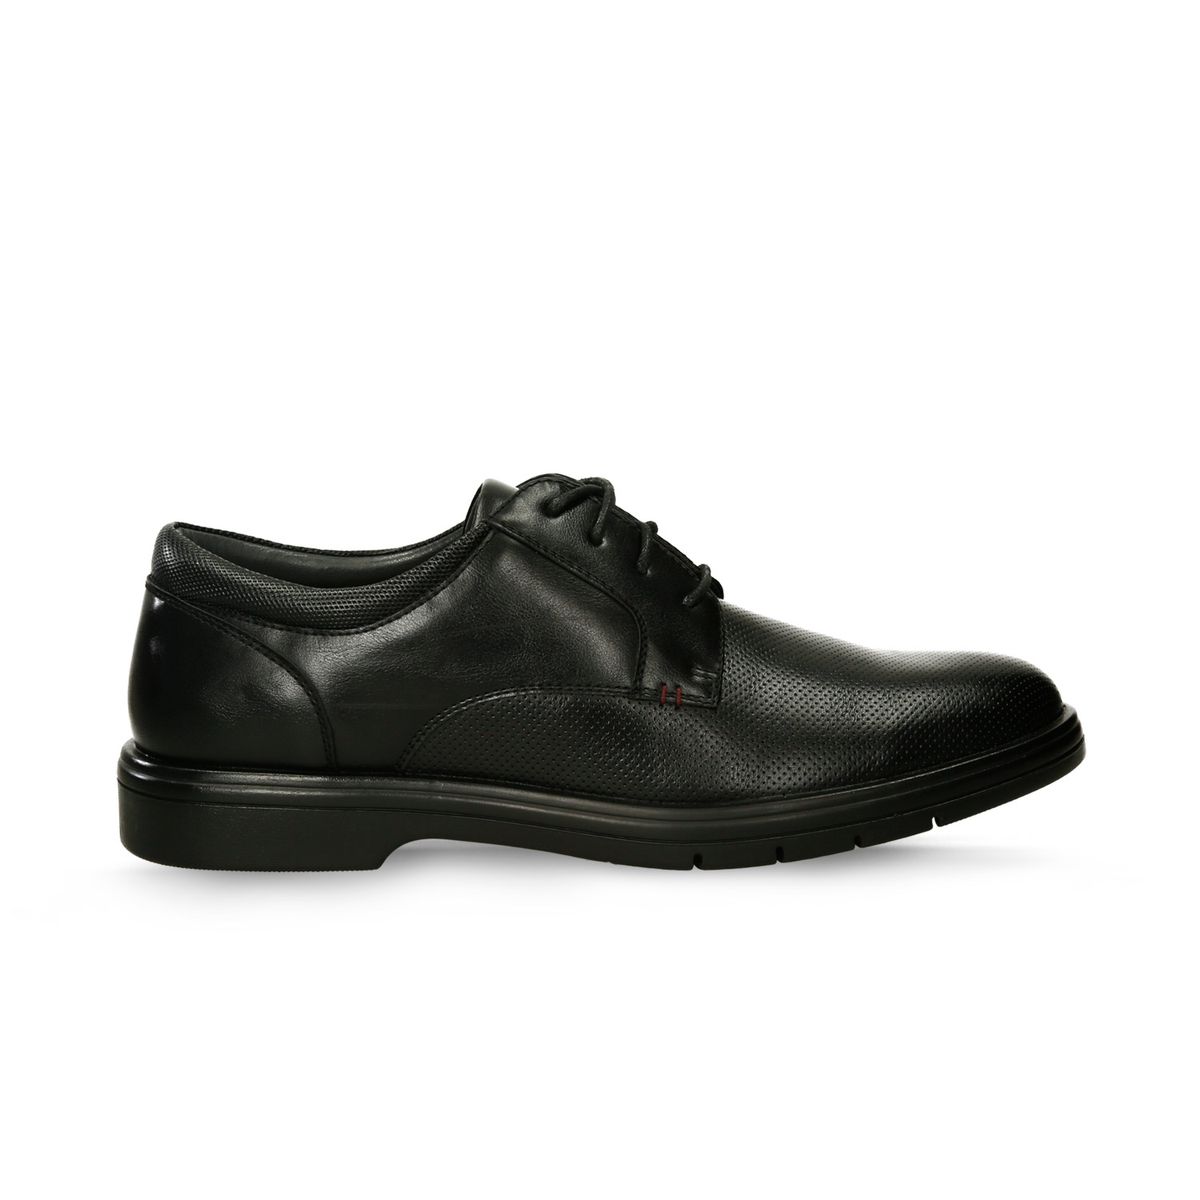 Zapatos Formales Negro Bata Comfit Flexifit Larry Cor Hombre